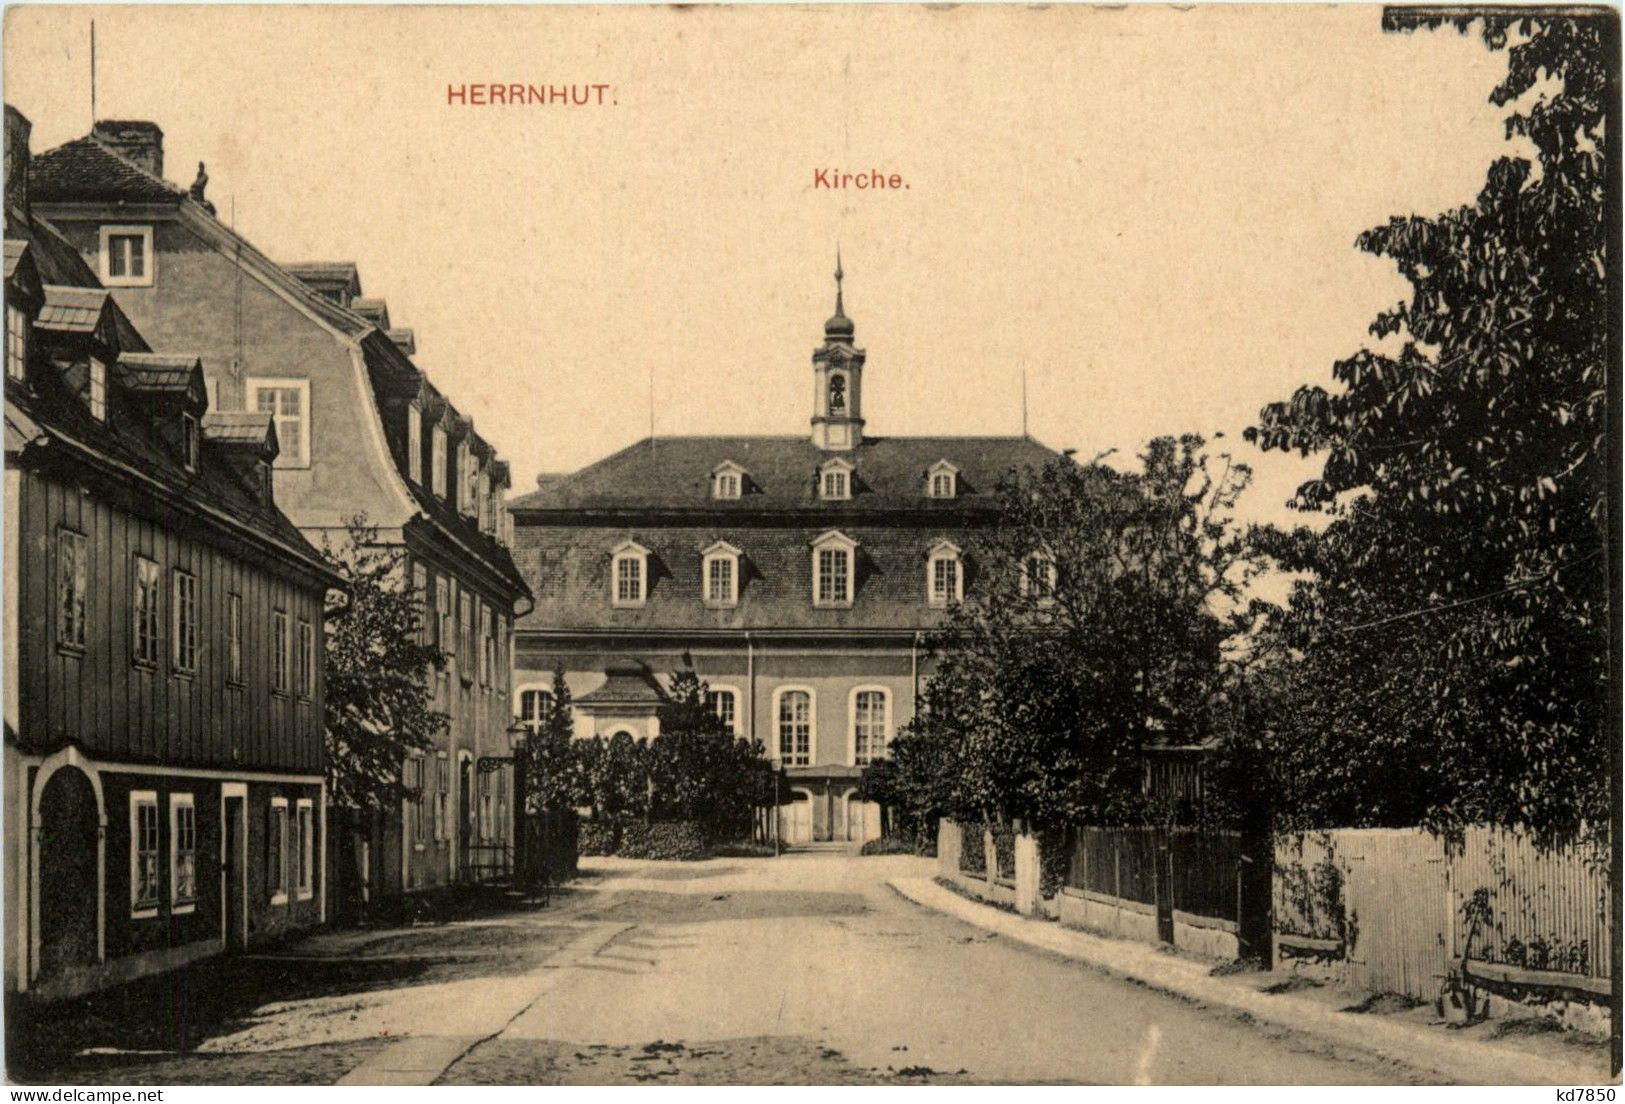 Herrnhut - Herrnhut